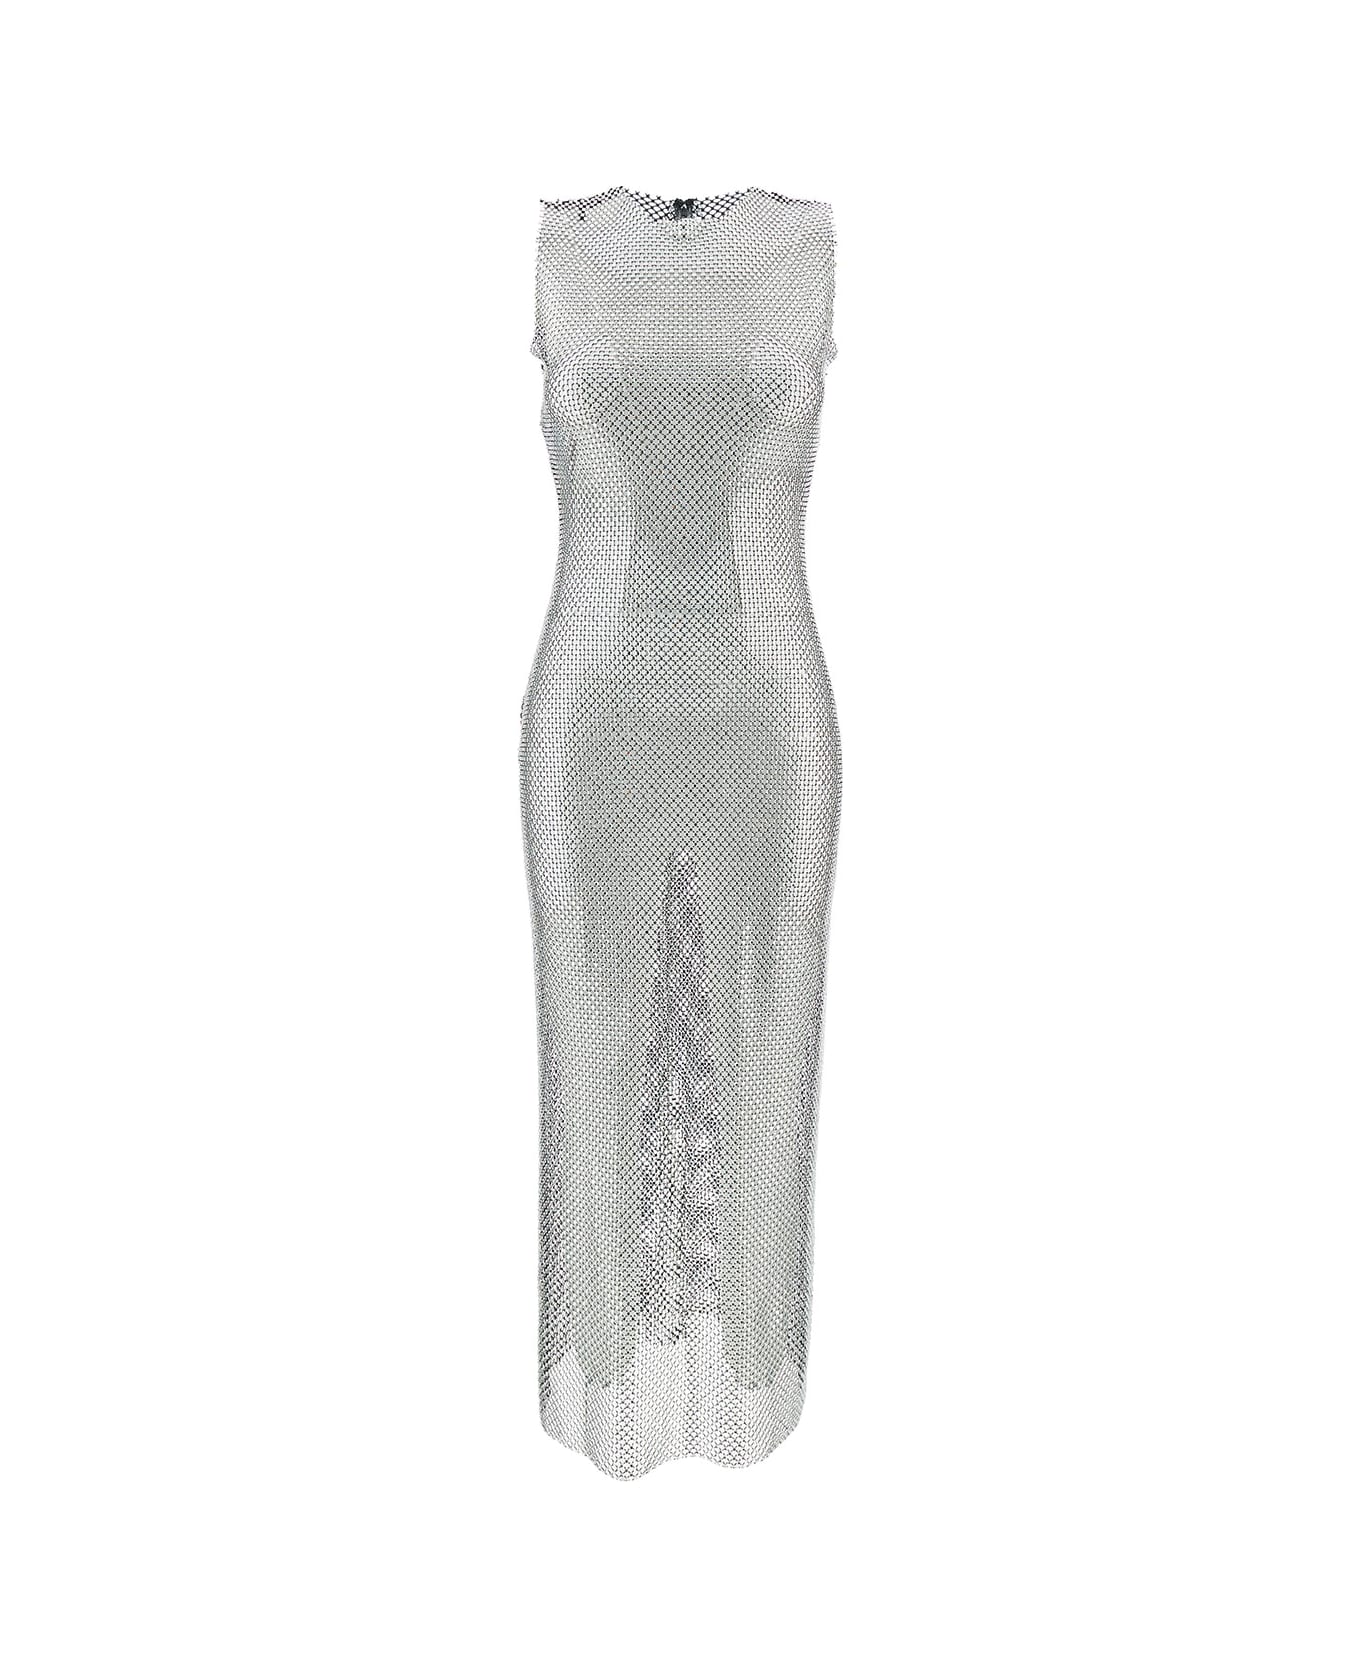 Philosophy di Lorenzo Serafini Long Silver Dress With All-over Swarovski In Mesh Woman - Metallic